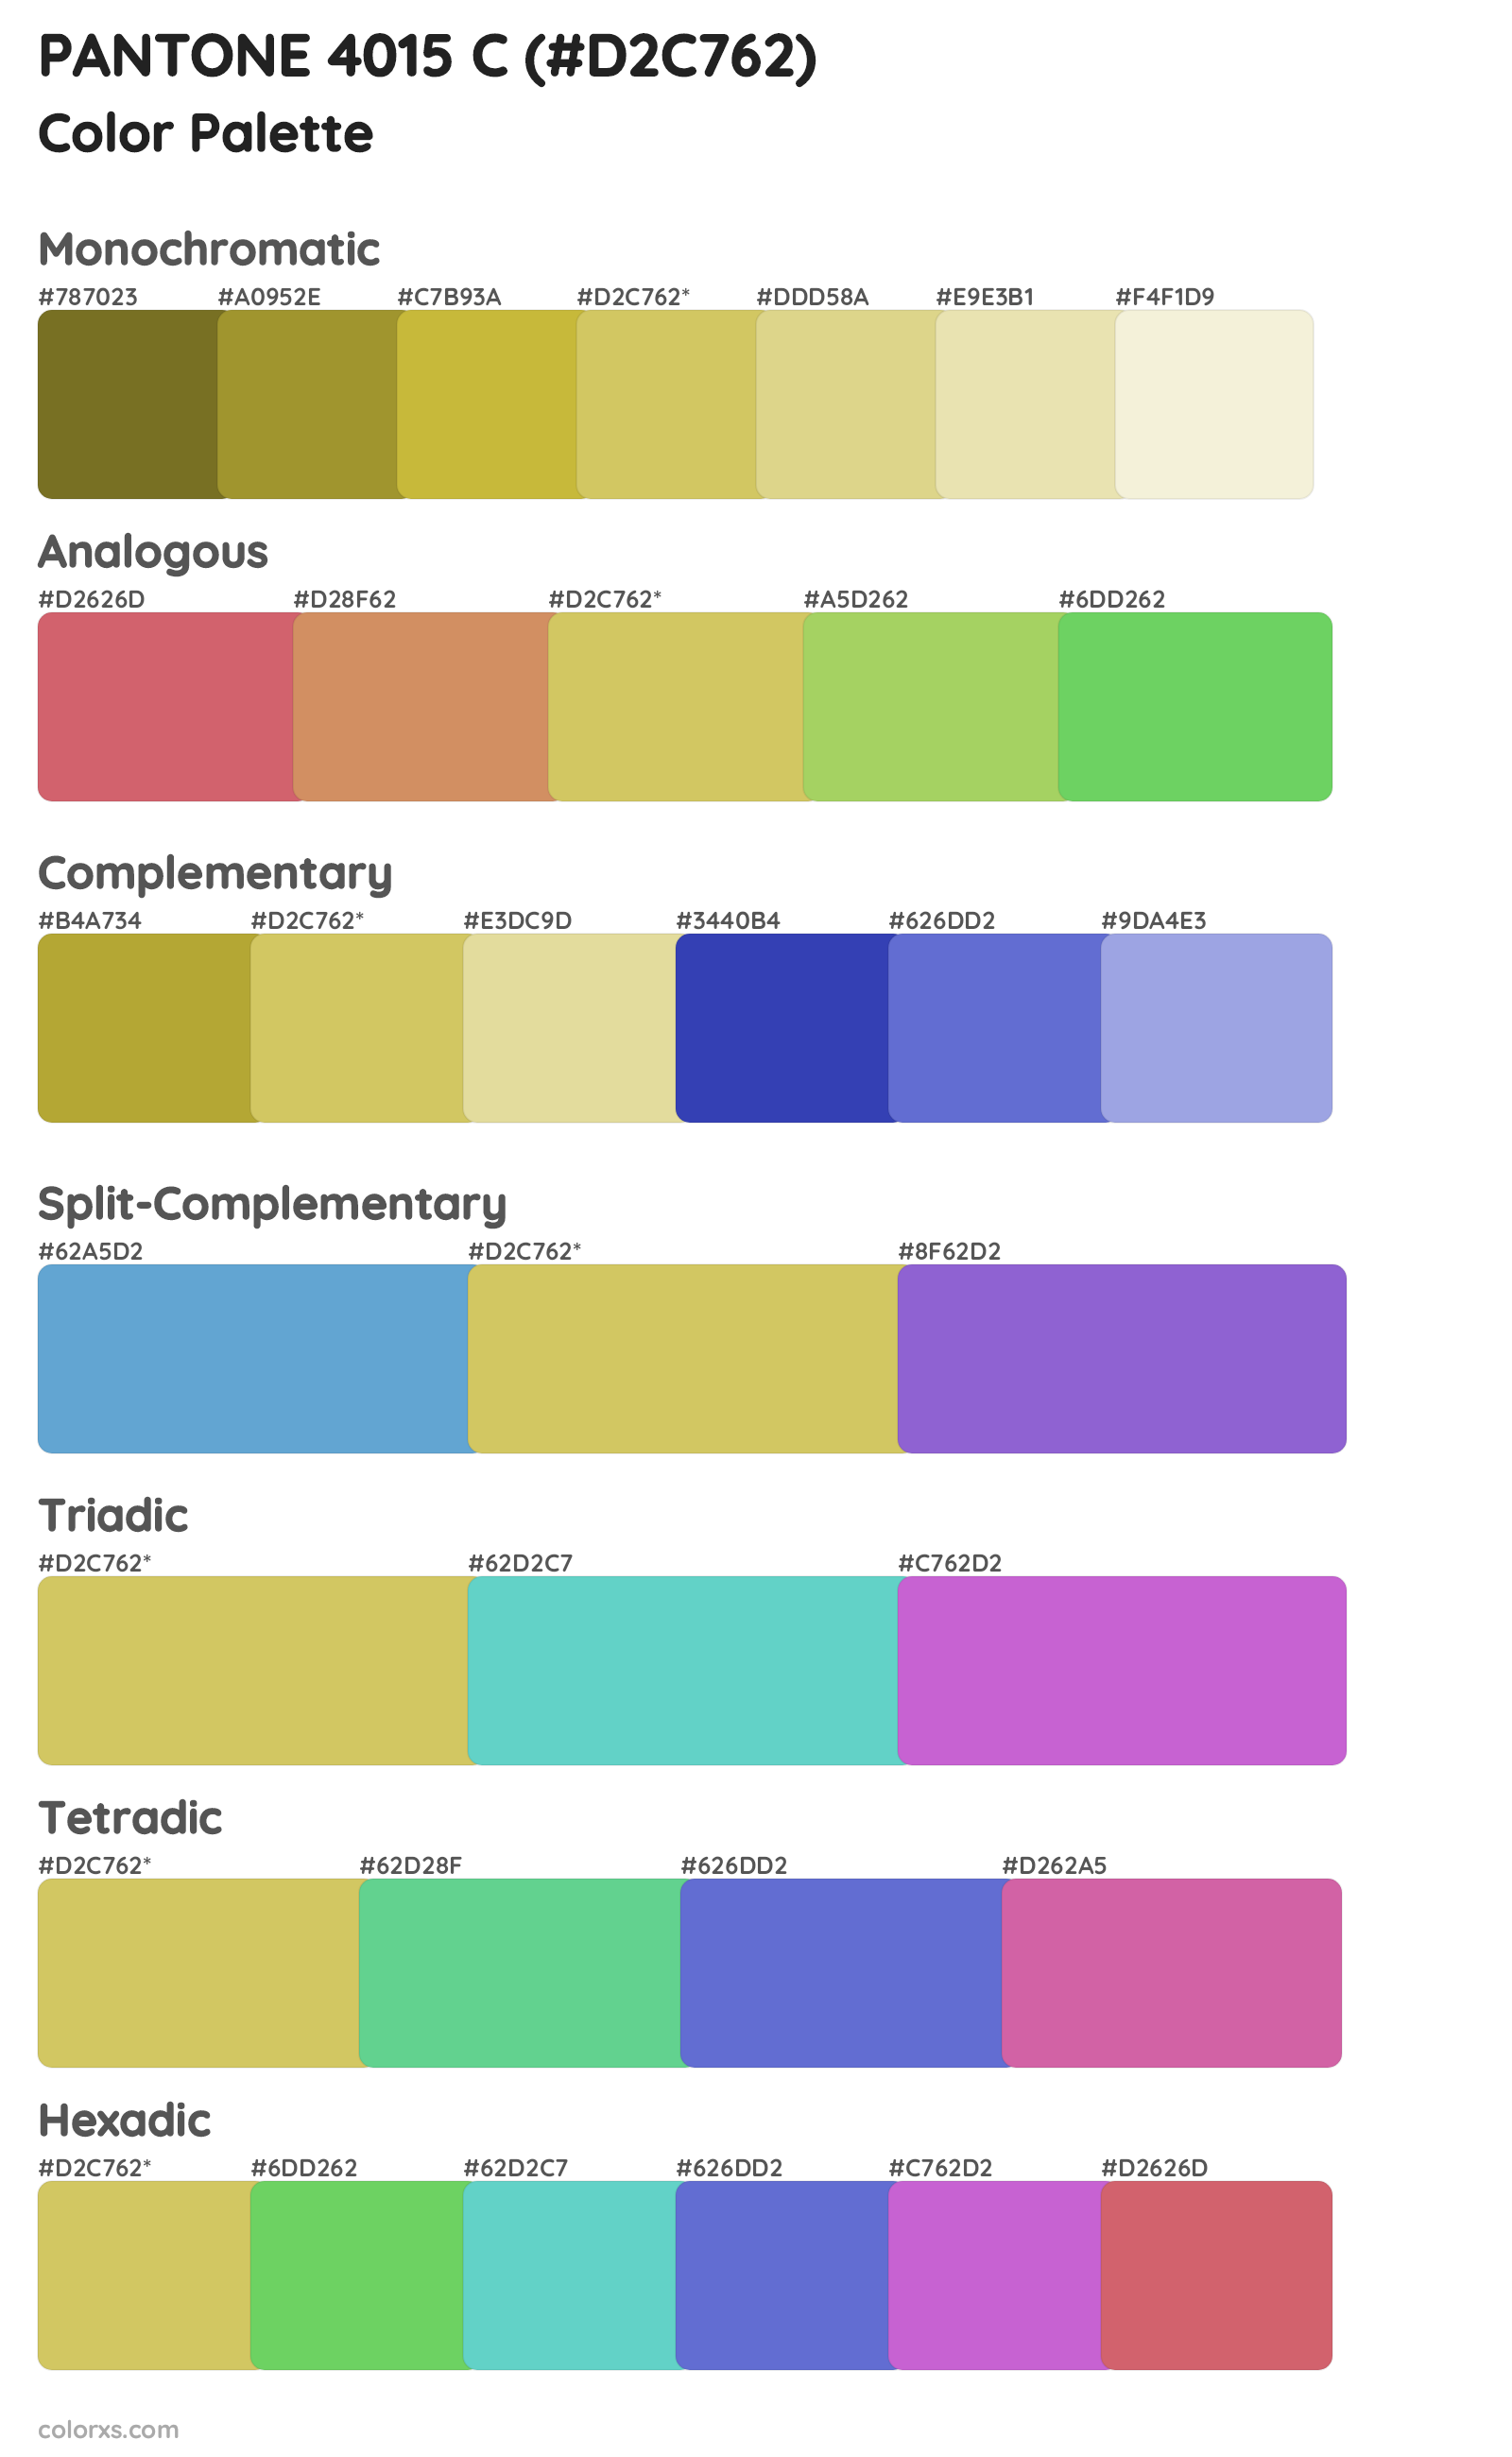 PANTONE 4015 C Color Scheme Palettes